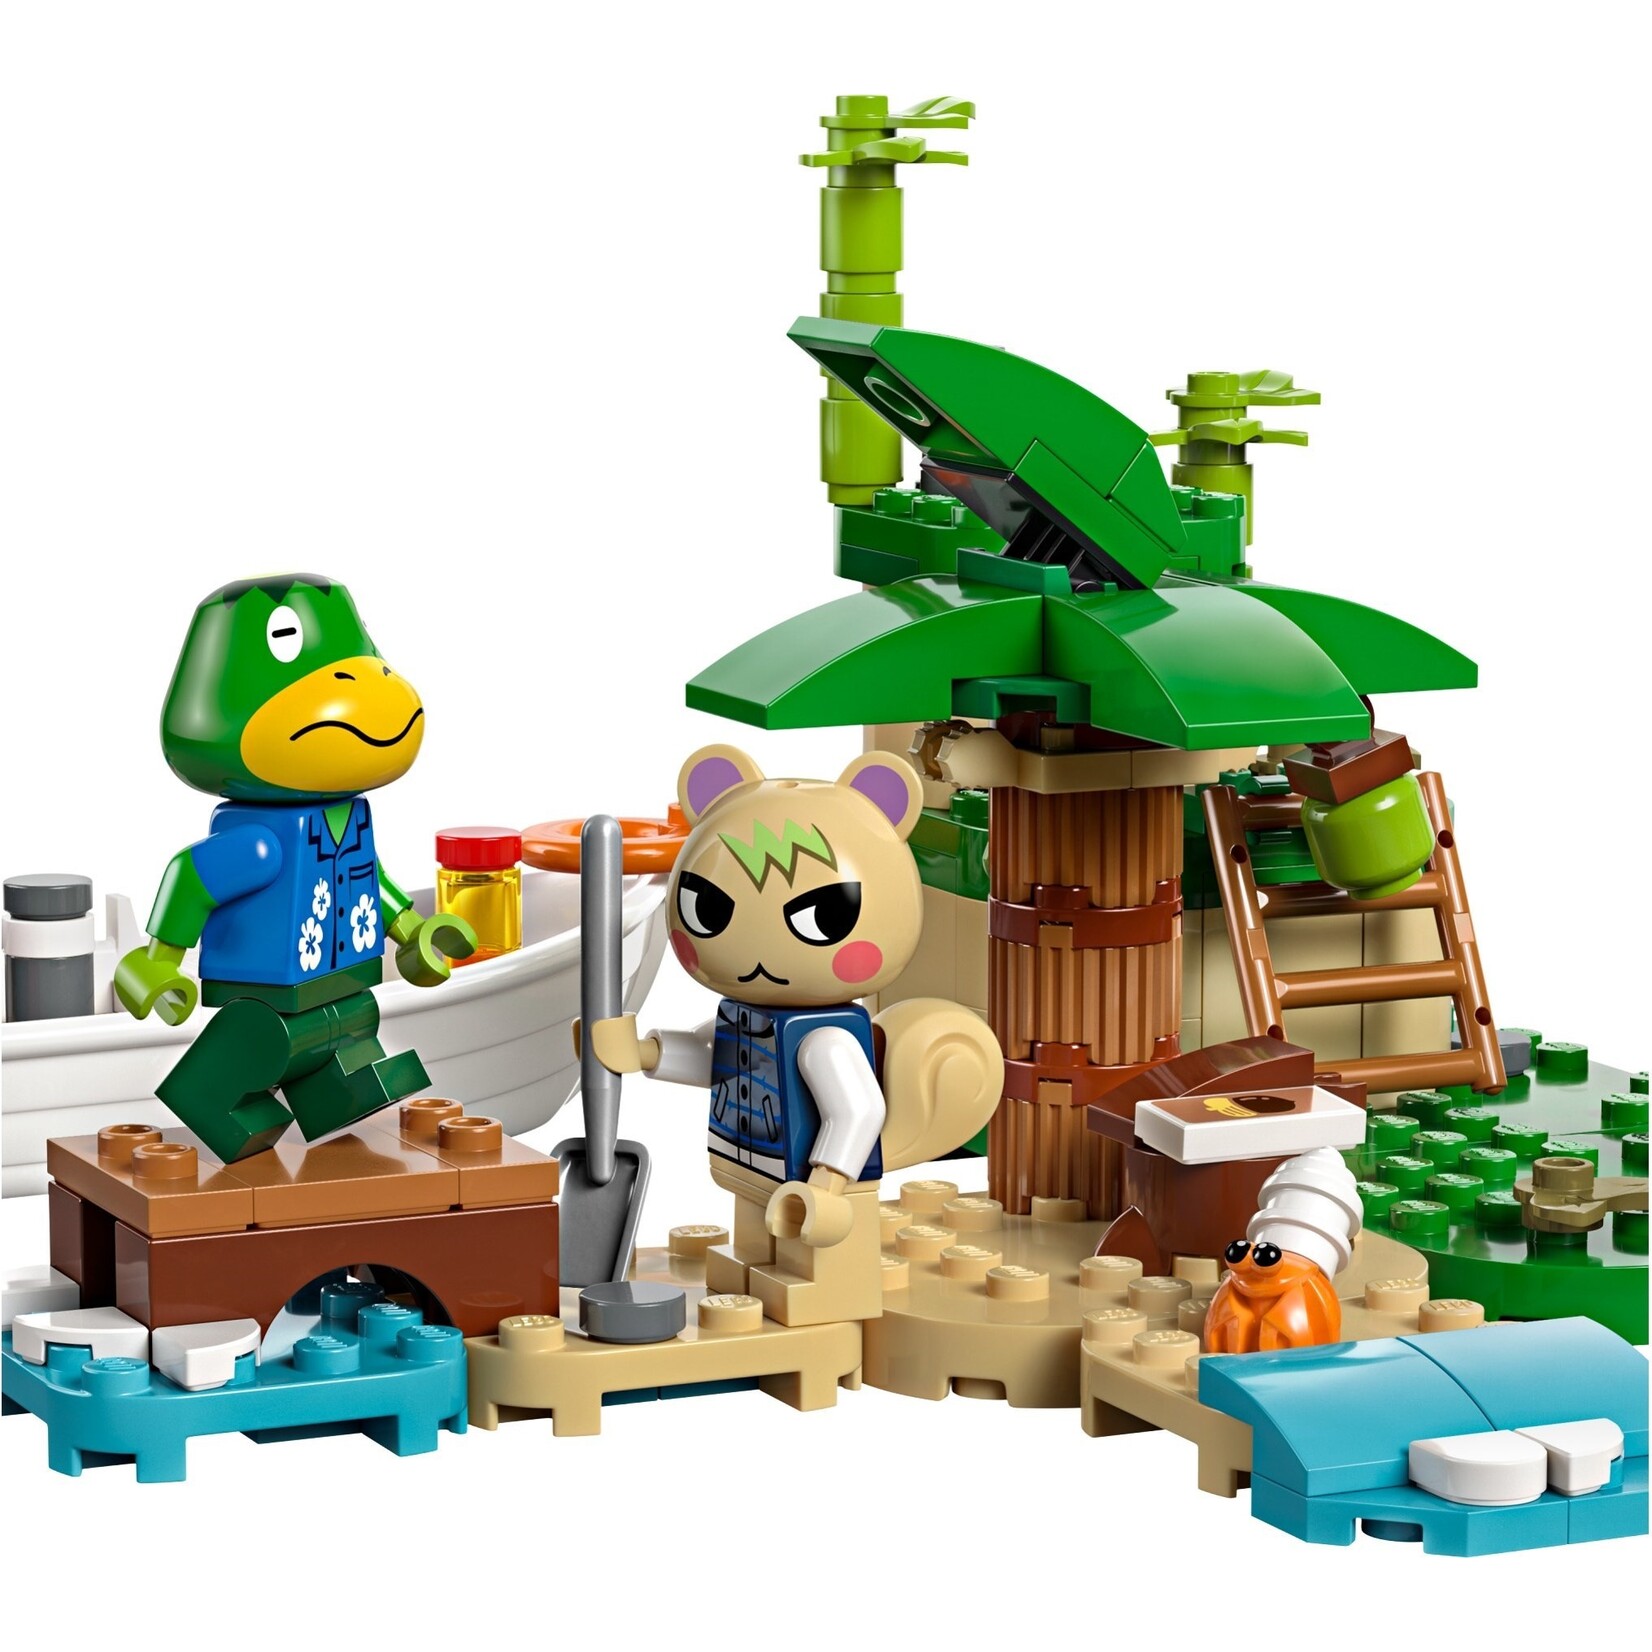 LEGO Kapp'ns eilandrondvaart - 77048